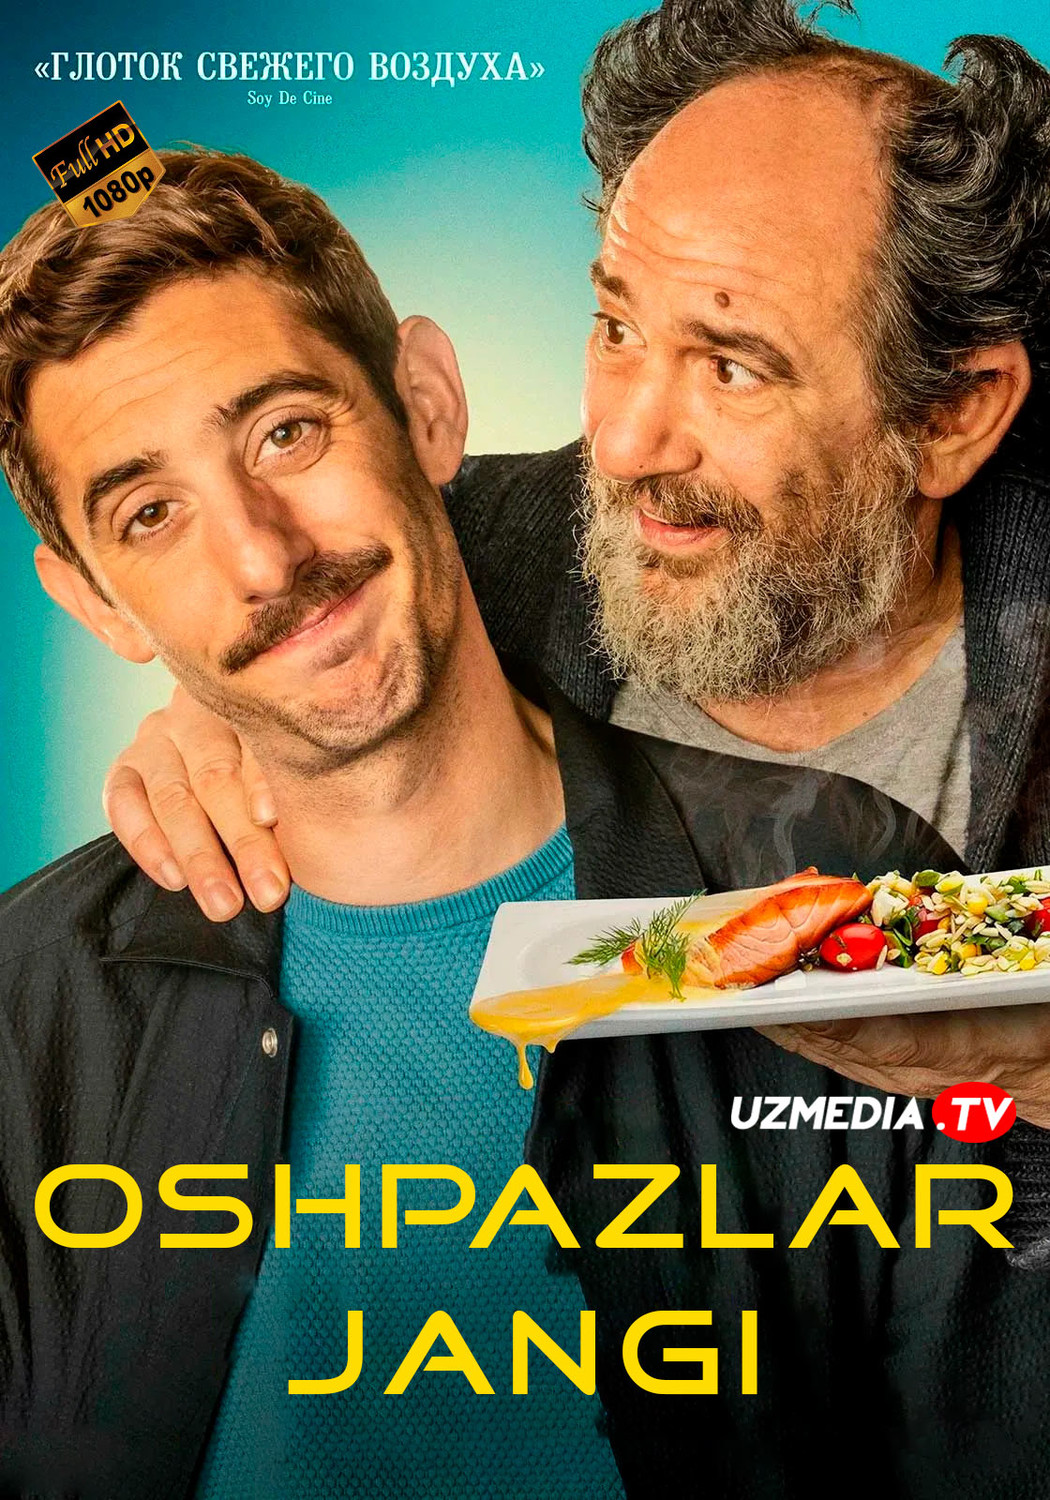 Oshpazlar jangi / Boshliqlar jangi Ispaniya filmi Uzbek tilida O'zbekcha 2022 tarjima kino Full HD skachat